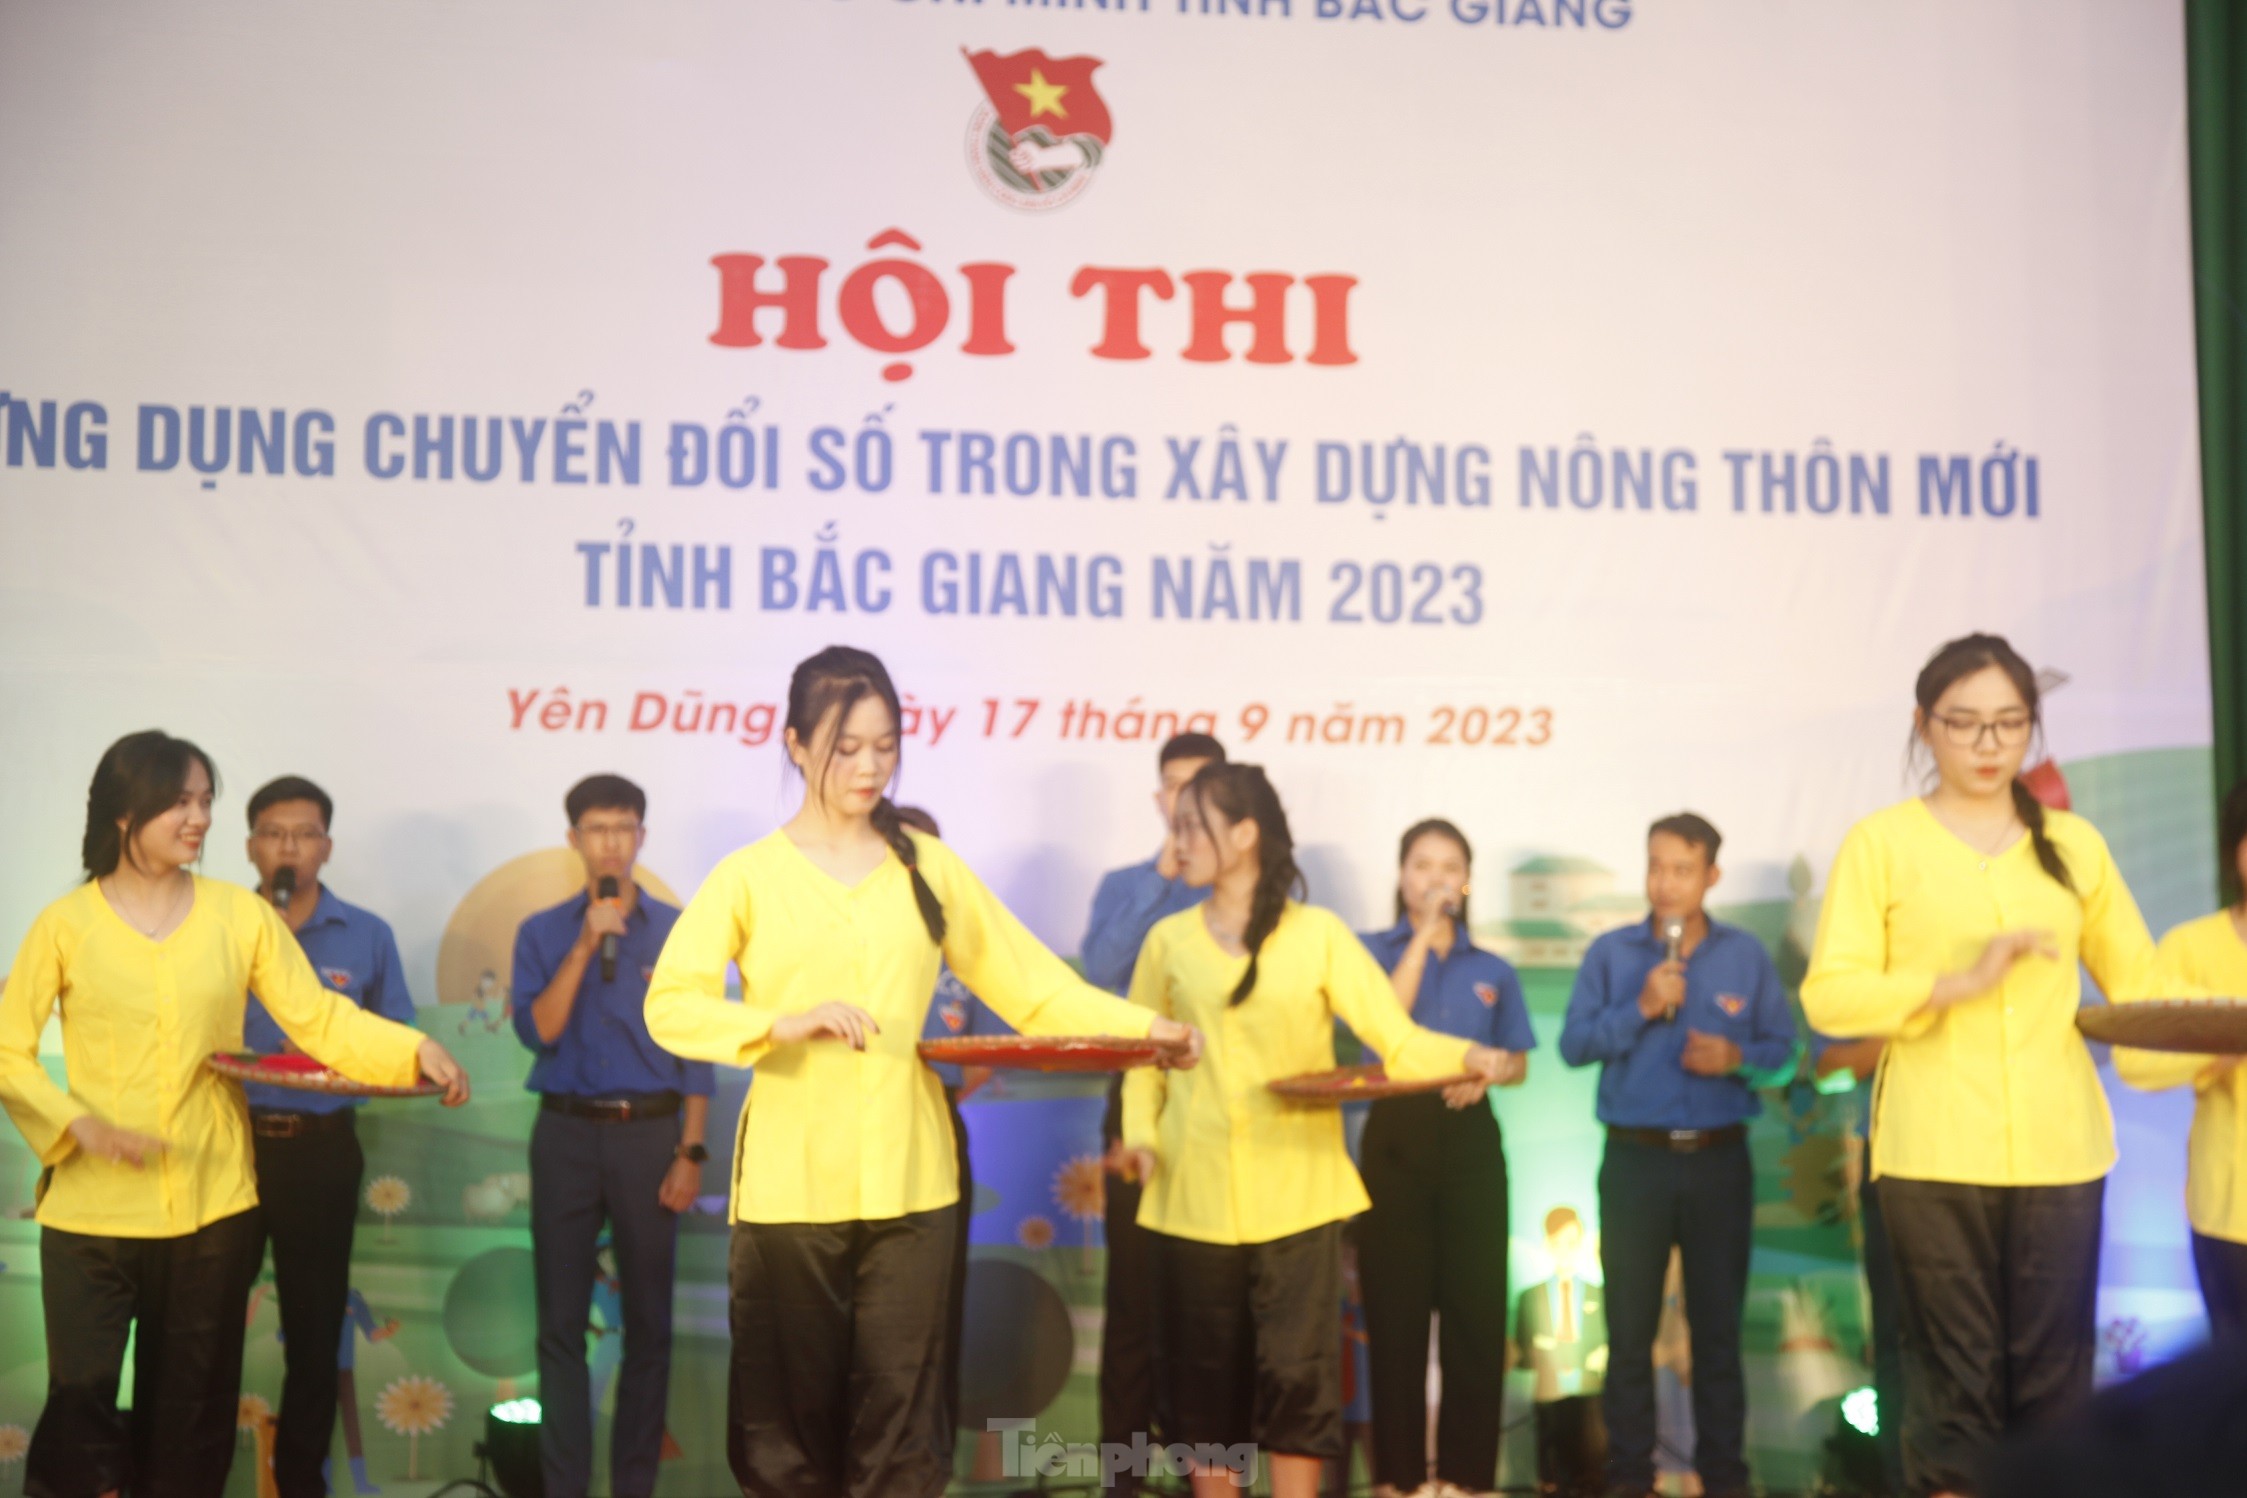 Tuổi trẻ Bắc Giang giúp người dân giải quyết 10.000 thủ tục dịch vụ công trực tuyến